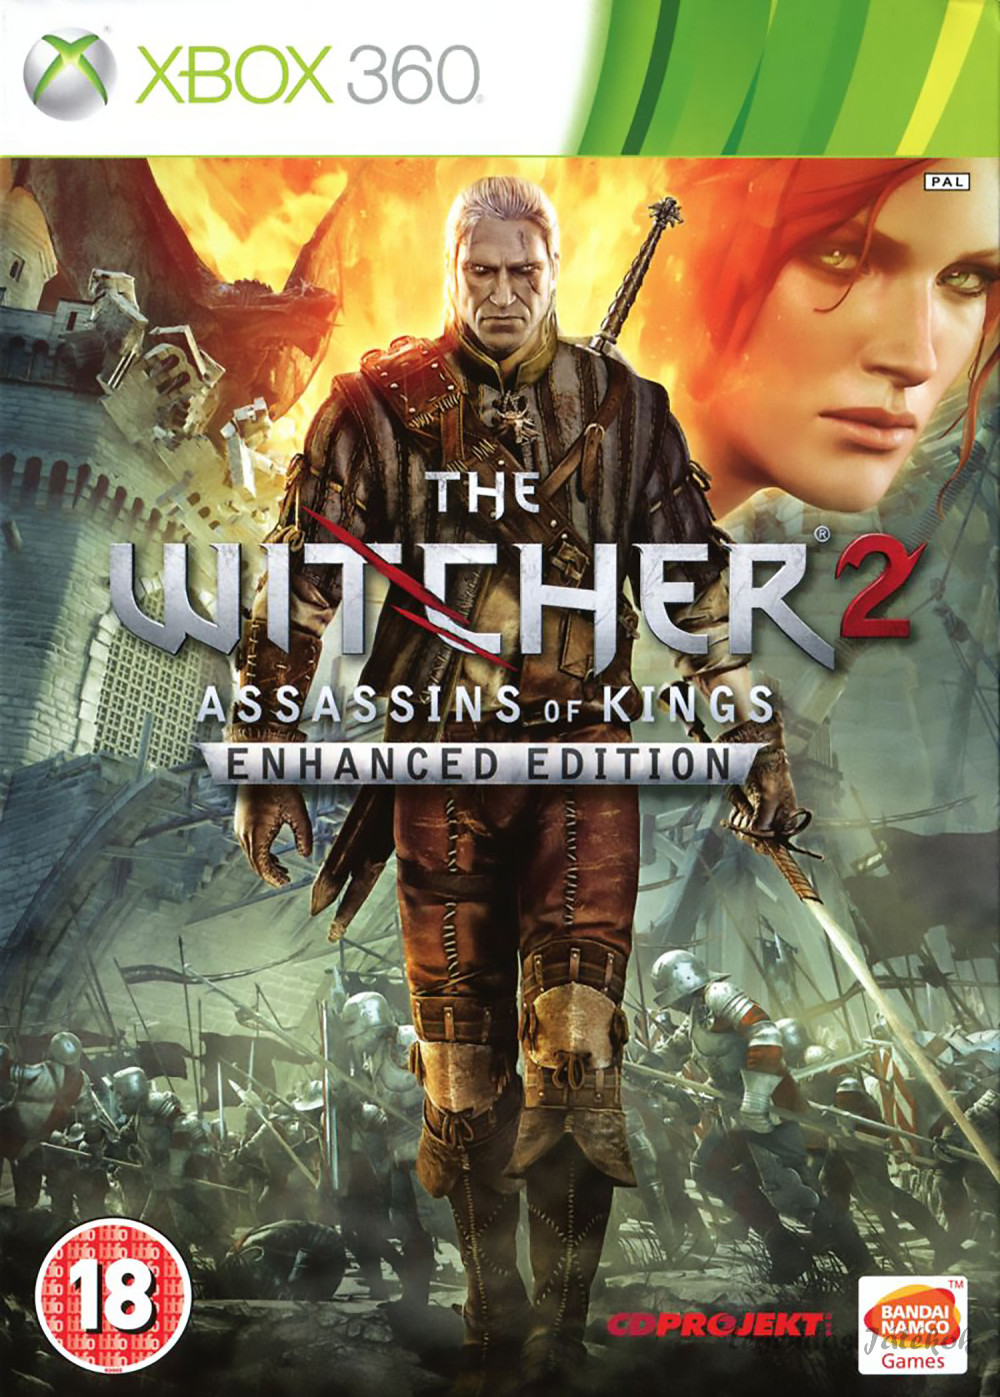 The Witcher 2 - Assassins of Kings Xbox 360 játék (használt)